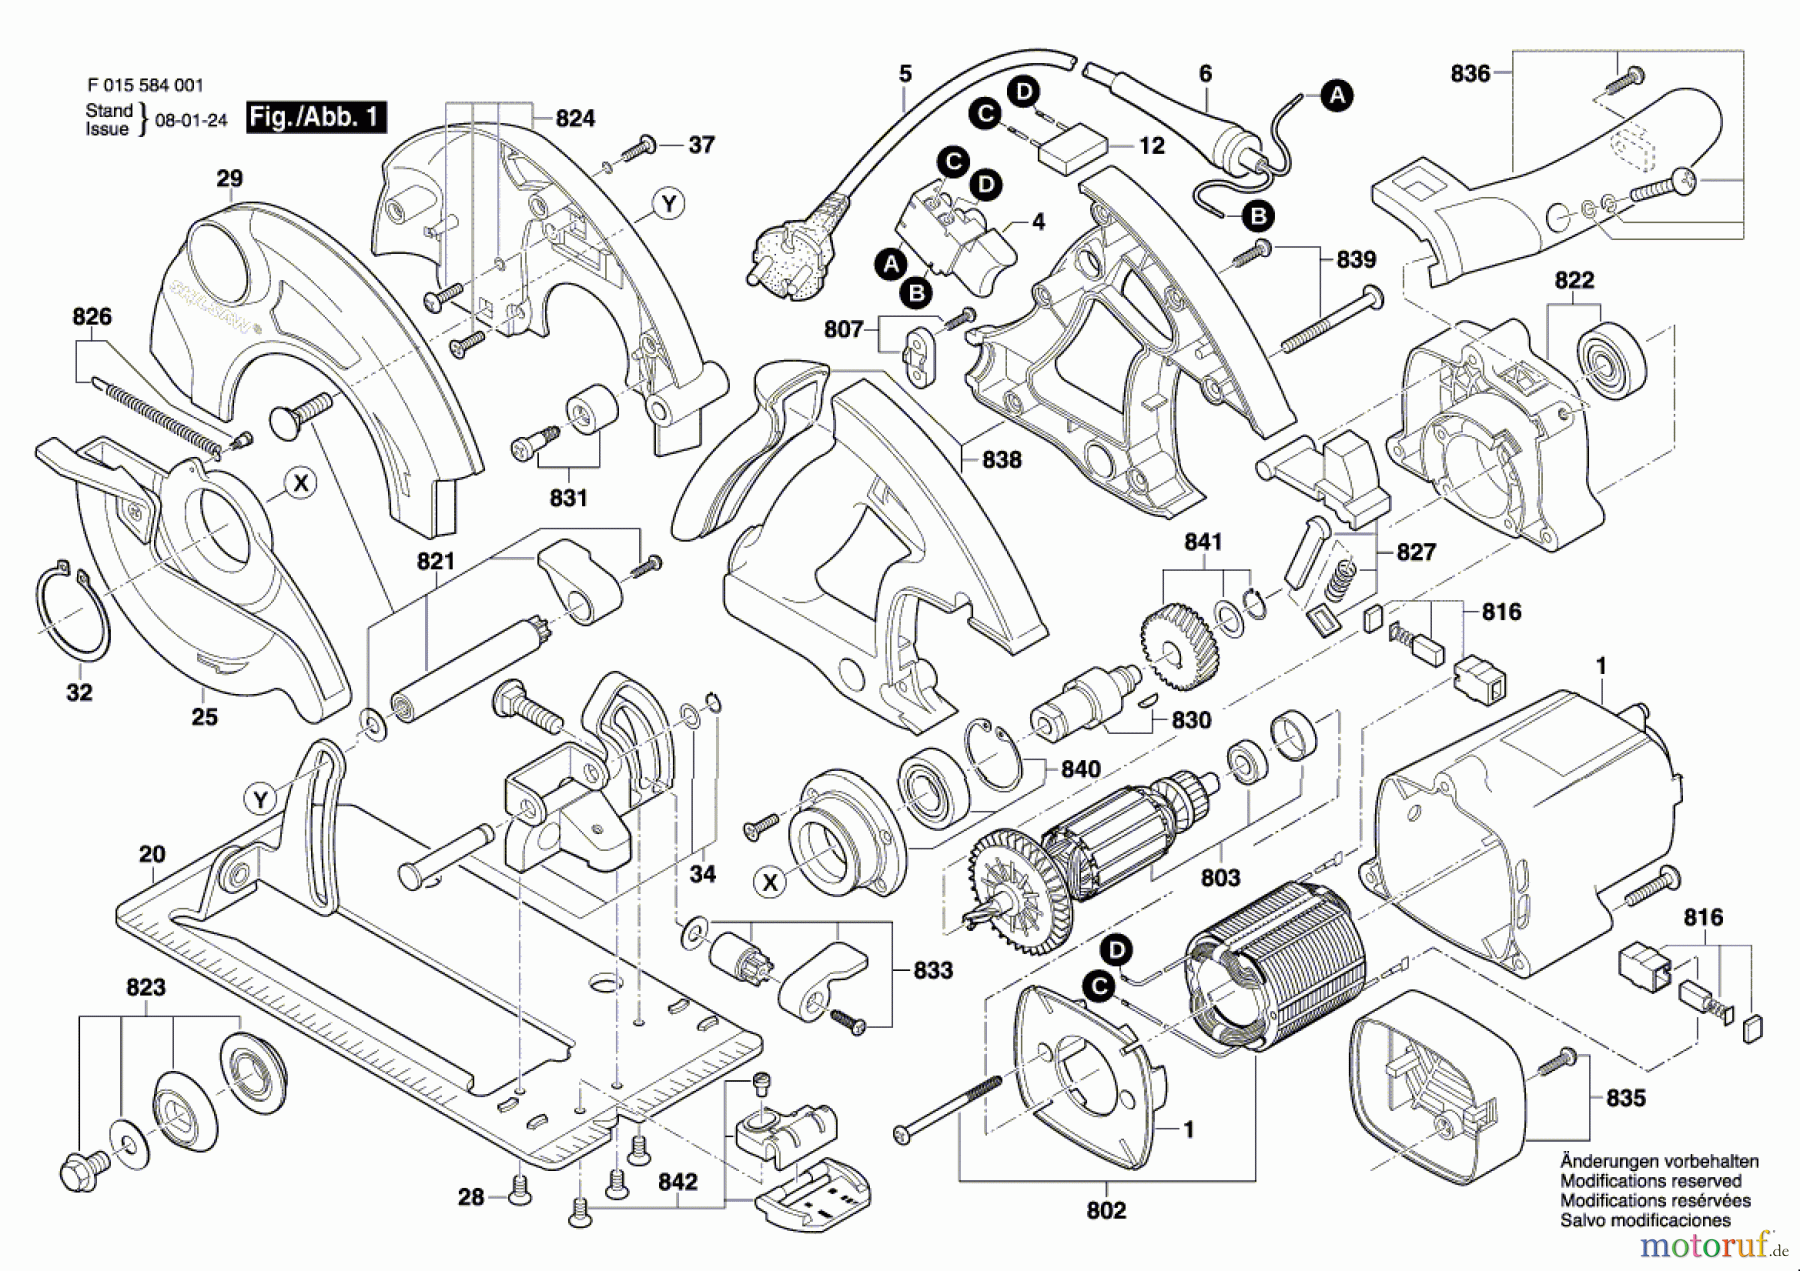  Bosch Werkzeug Handkreissäge 5840 Seite 1